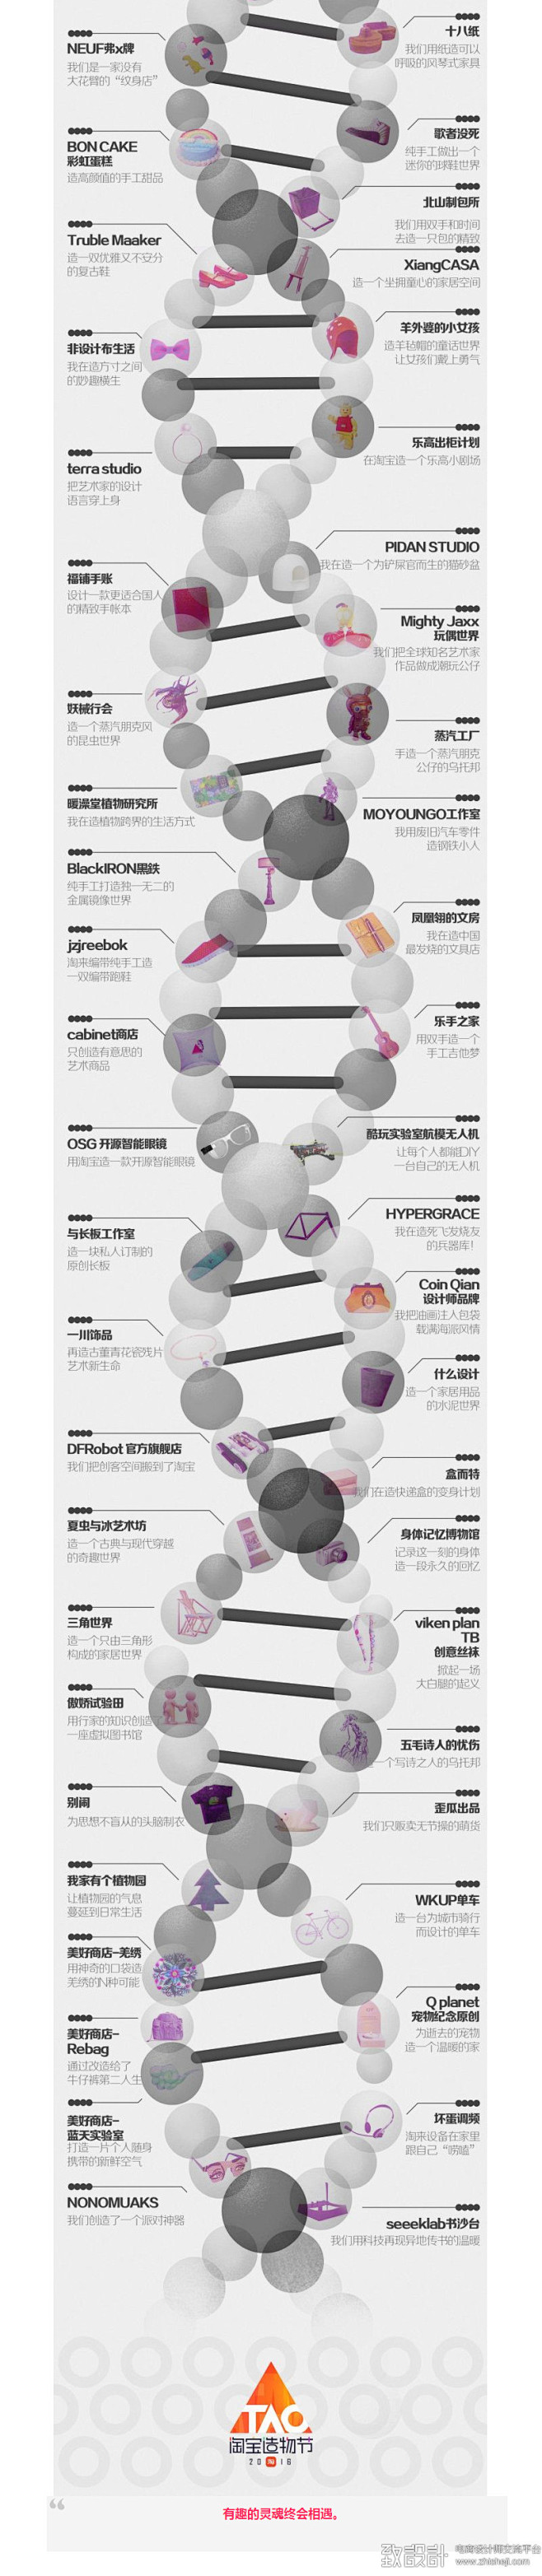 淘宝造物节海报：解锁 72 种造物基因，...